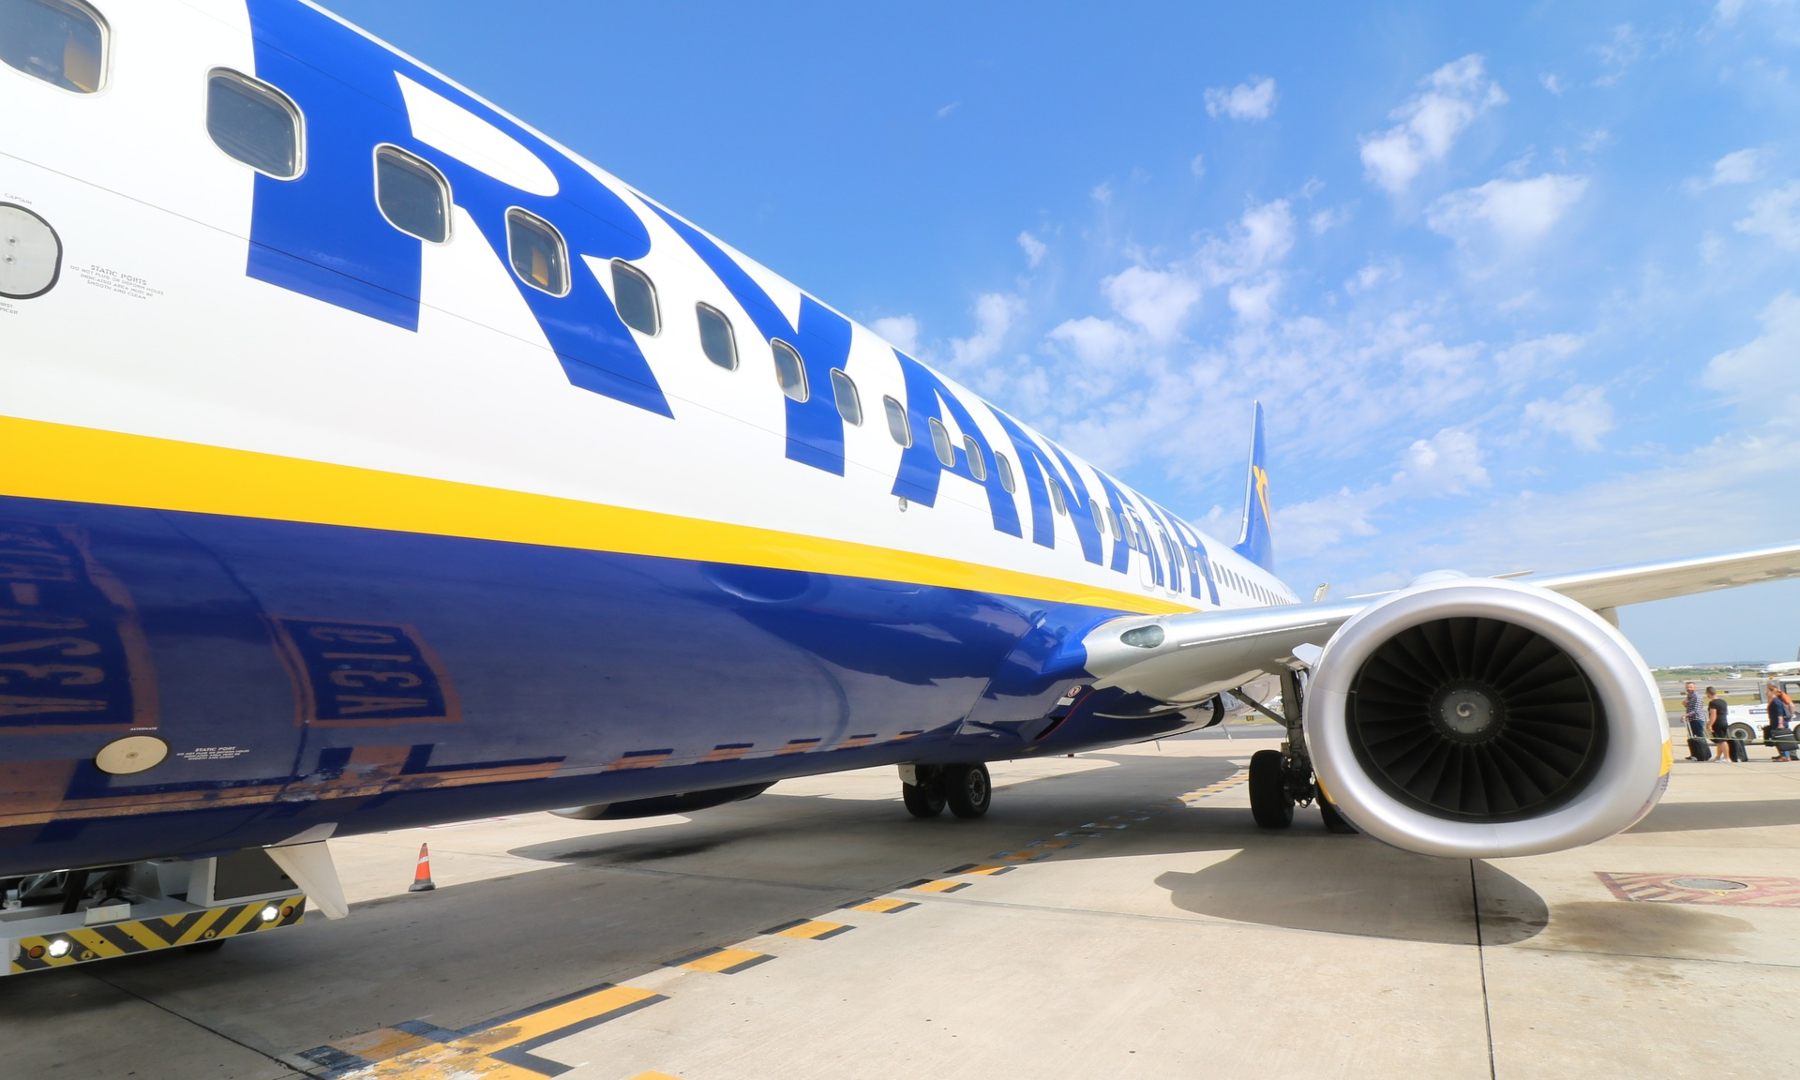 En Ryanair se vuelven locos con los descuentazos del Cyber Monday con vuelos a 5 euros